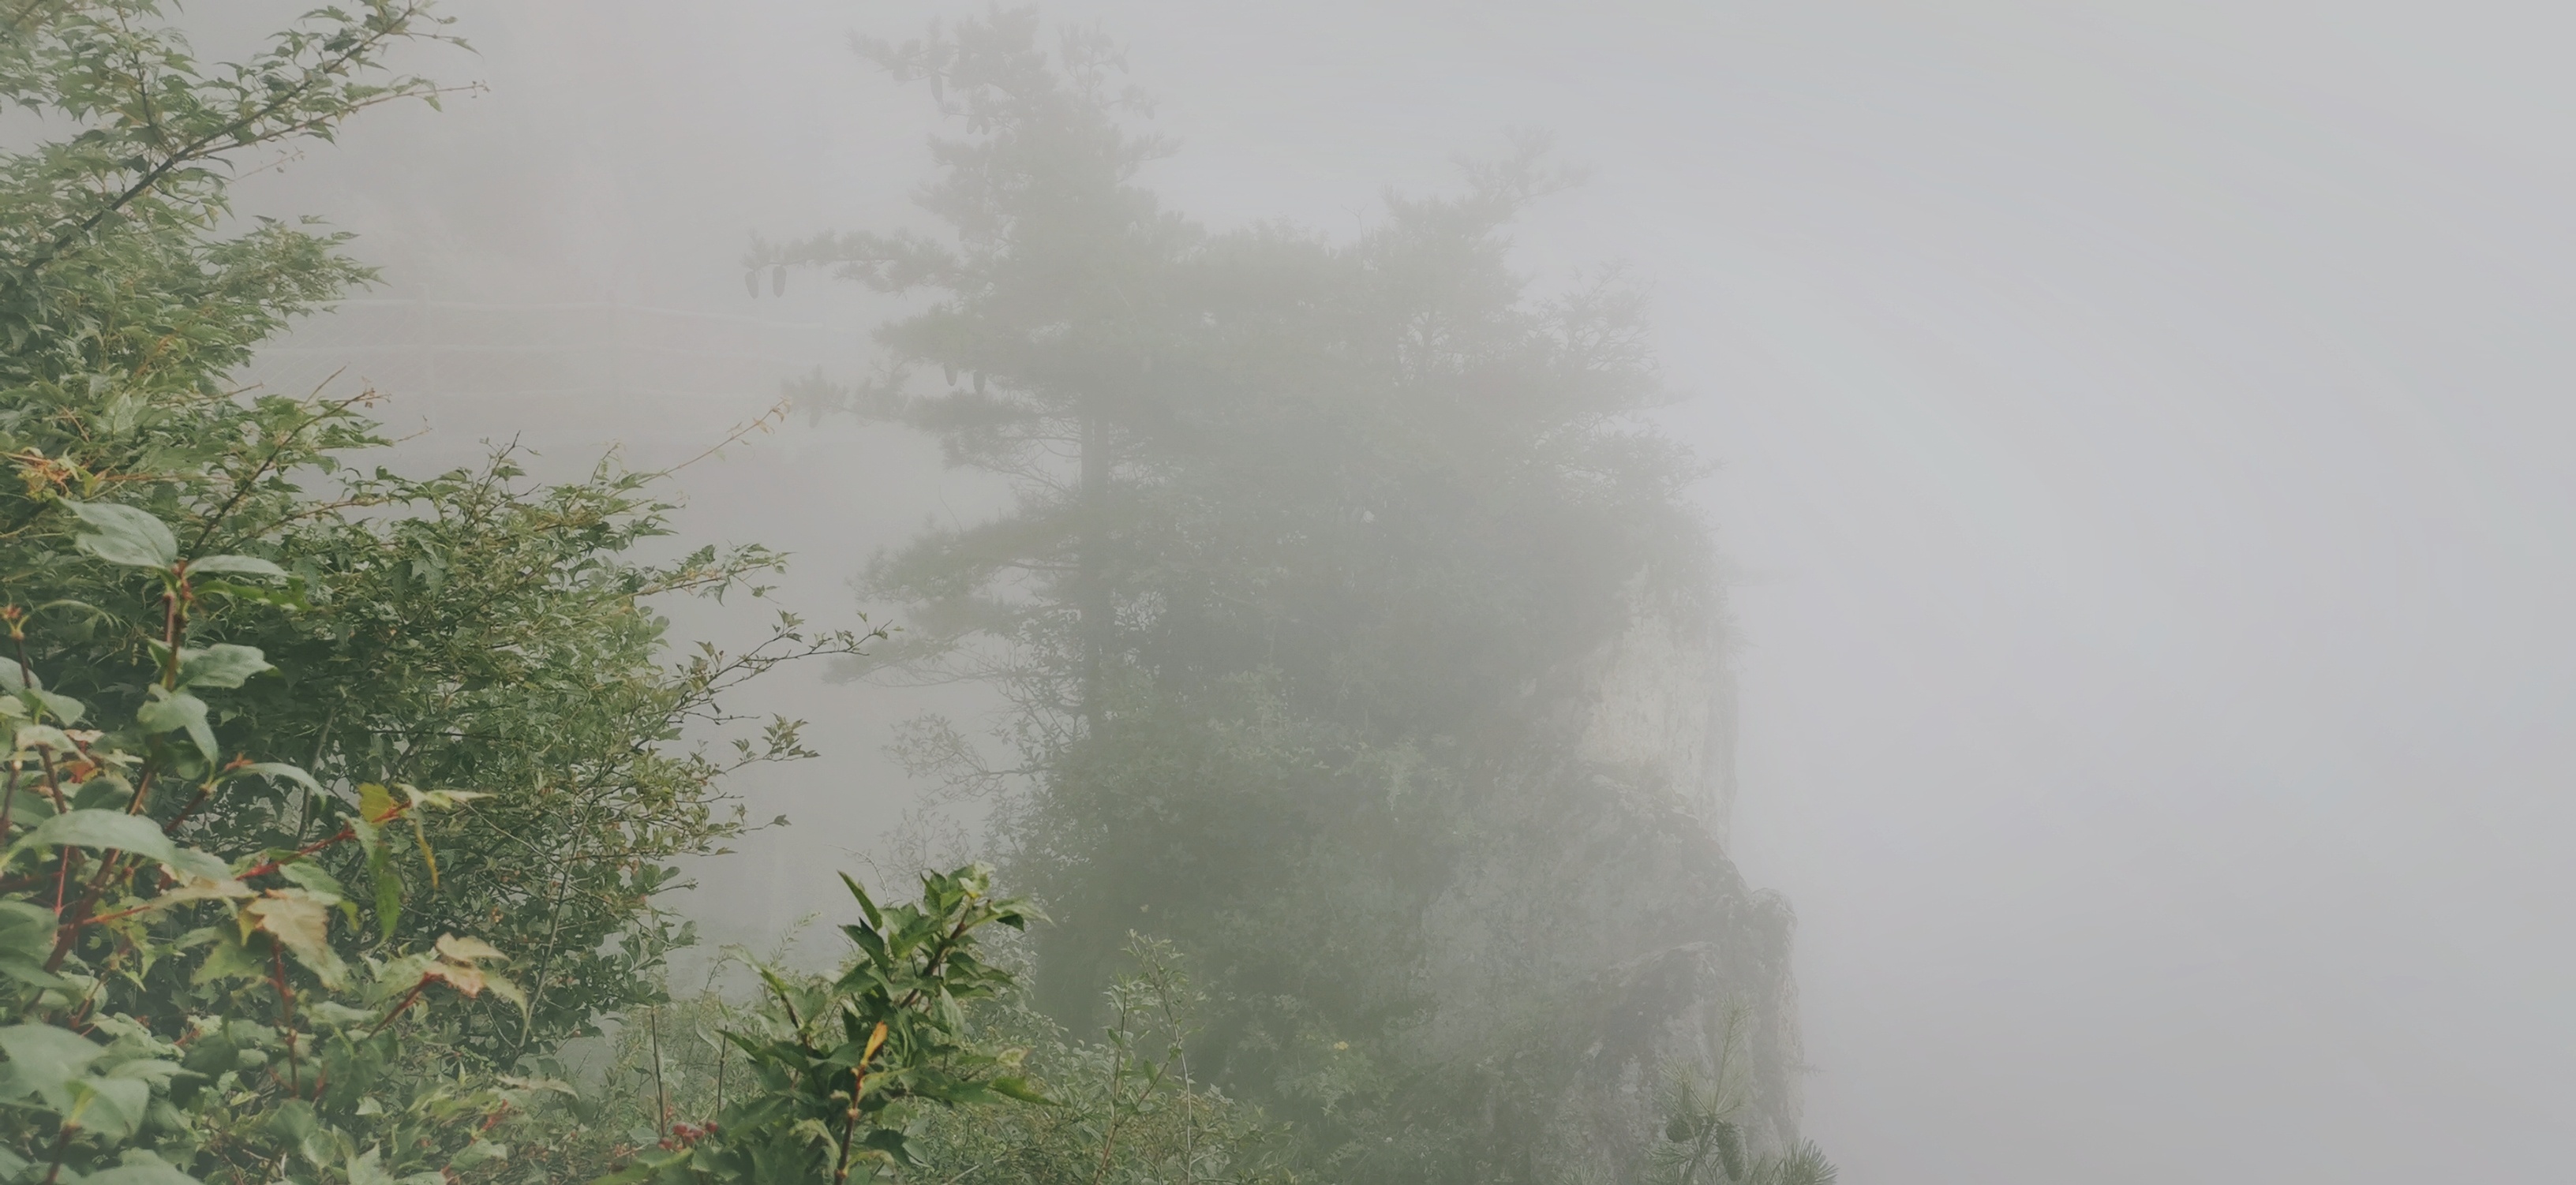 老君山一日游！景区是挺好的，就是太大雾了看不到远景